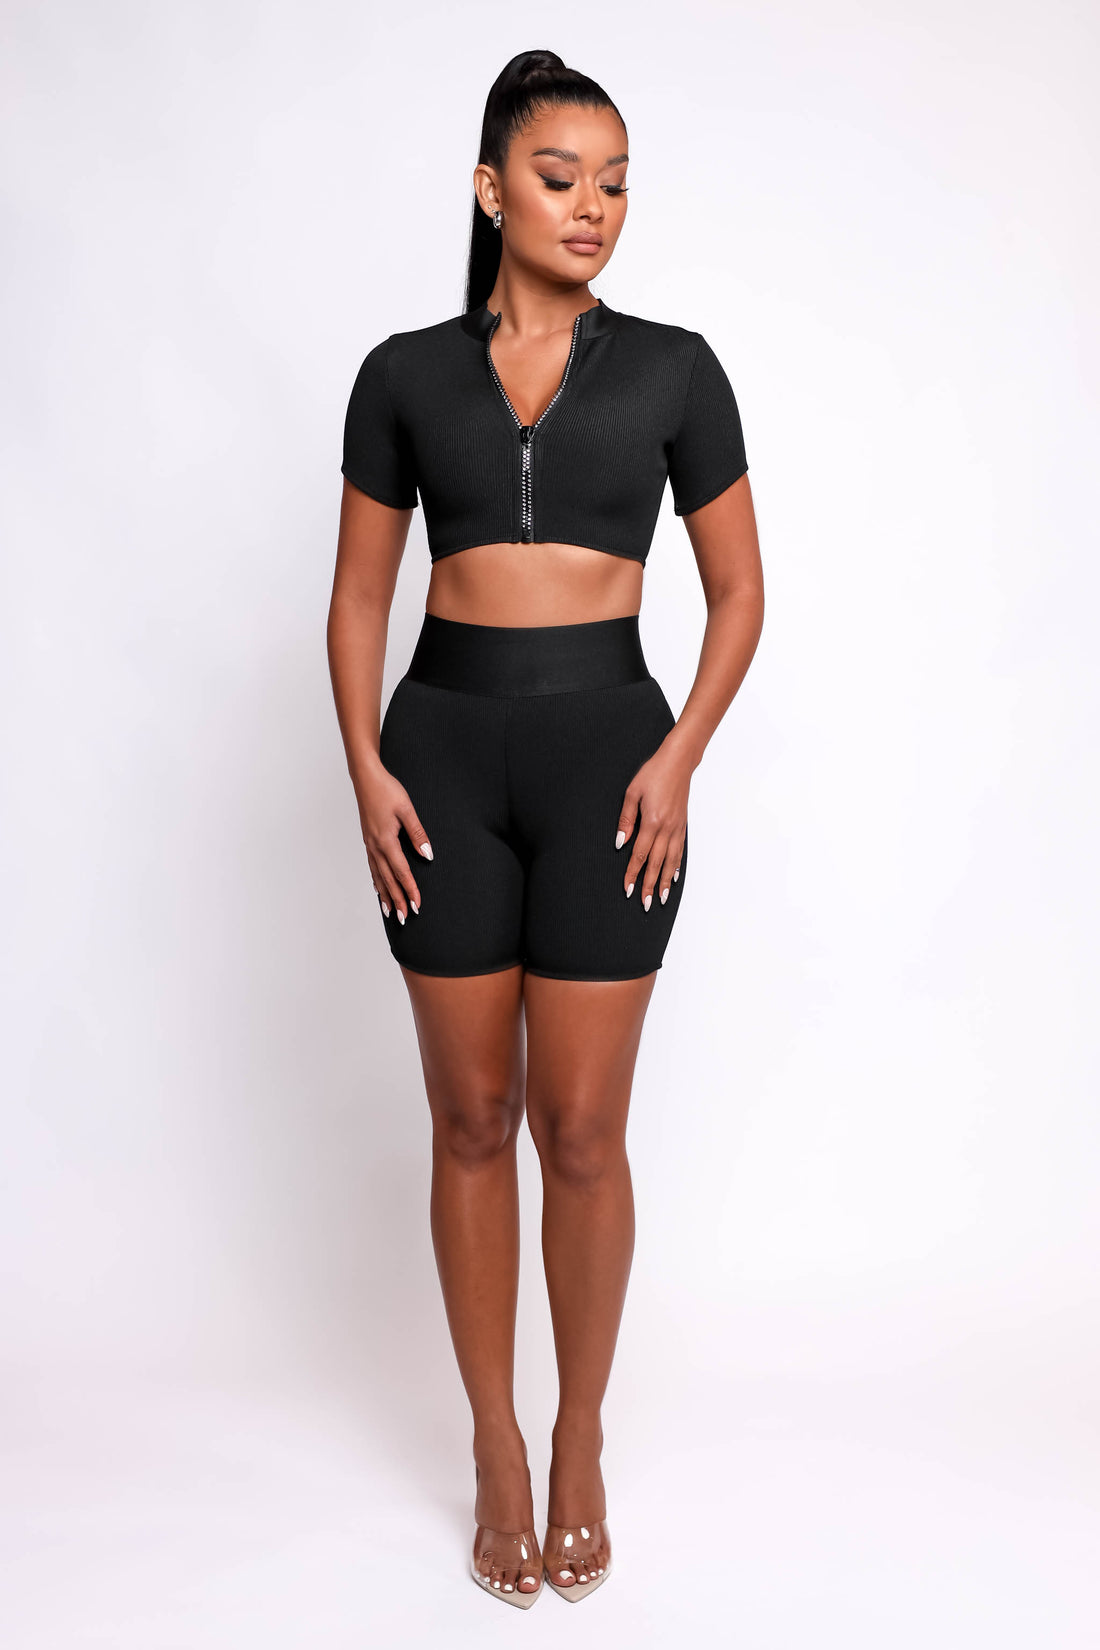 Kim Bandage Shorts - Black